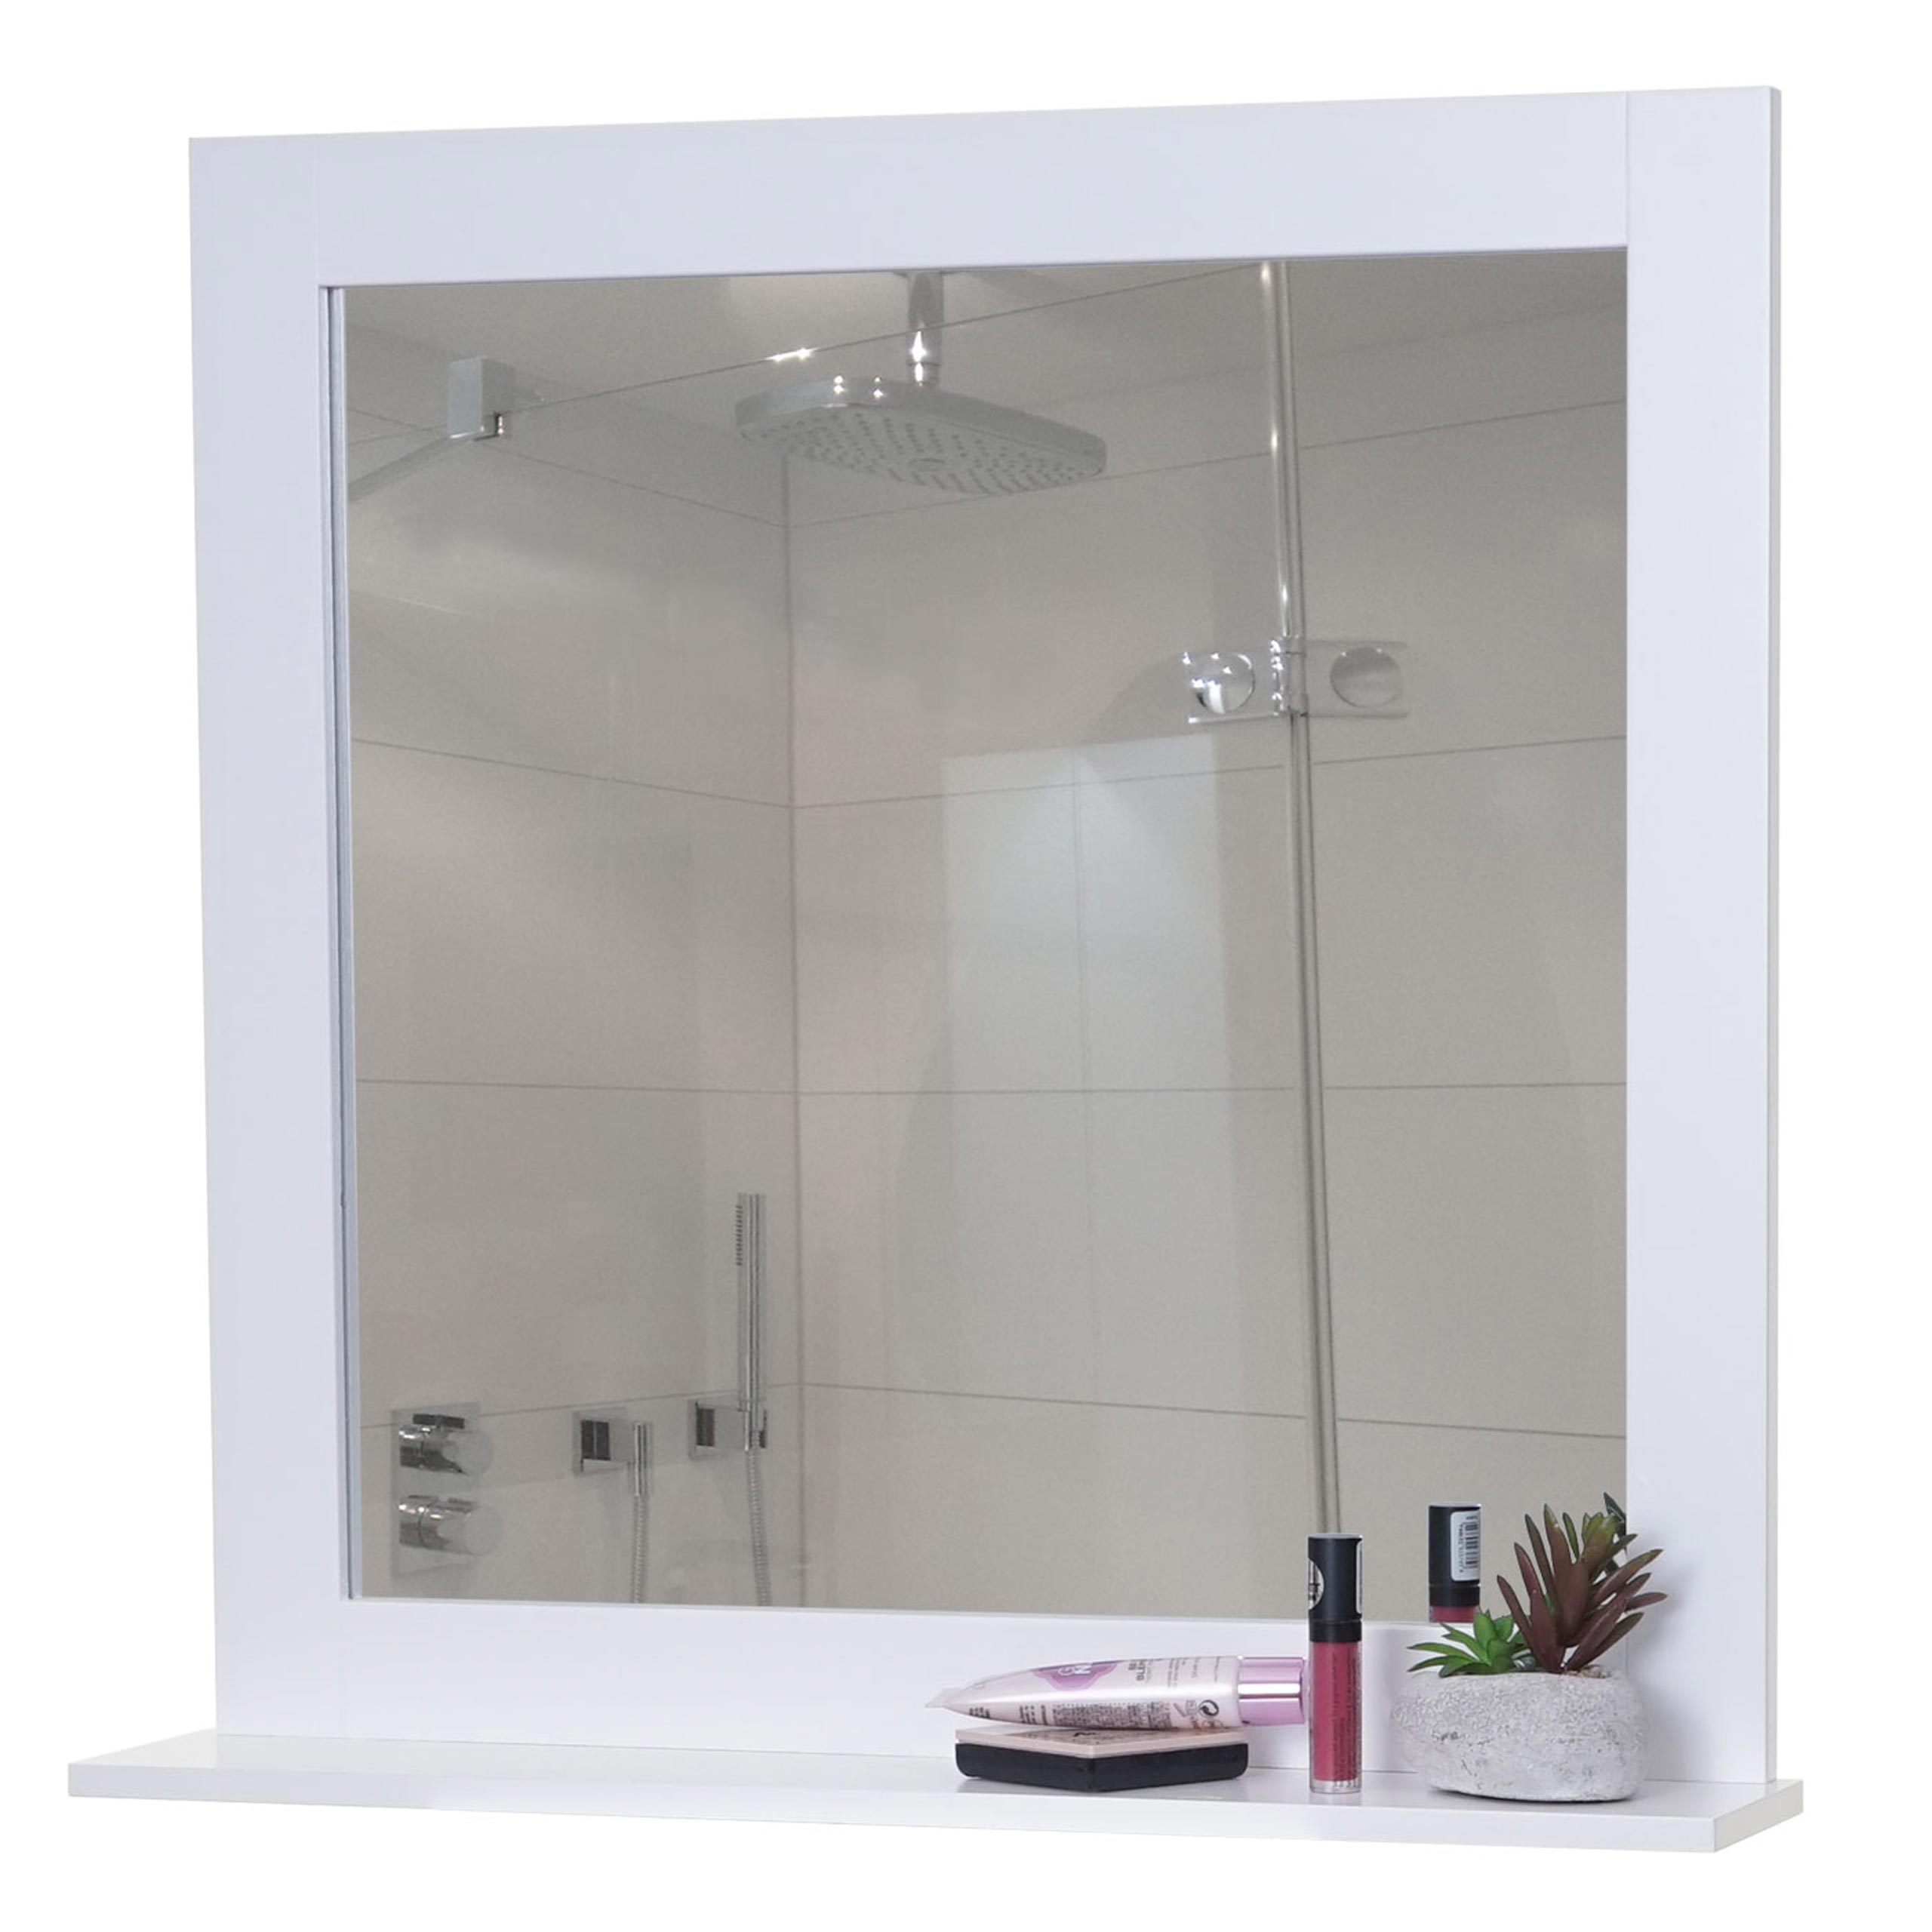 Wandspiegel HWC-F75, Badezimmer Badspiegel Spiegel, Ablagefläche